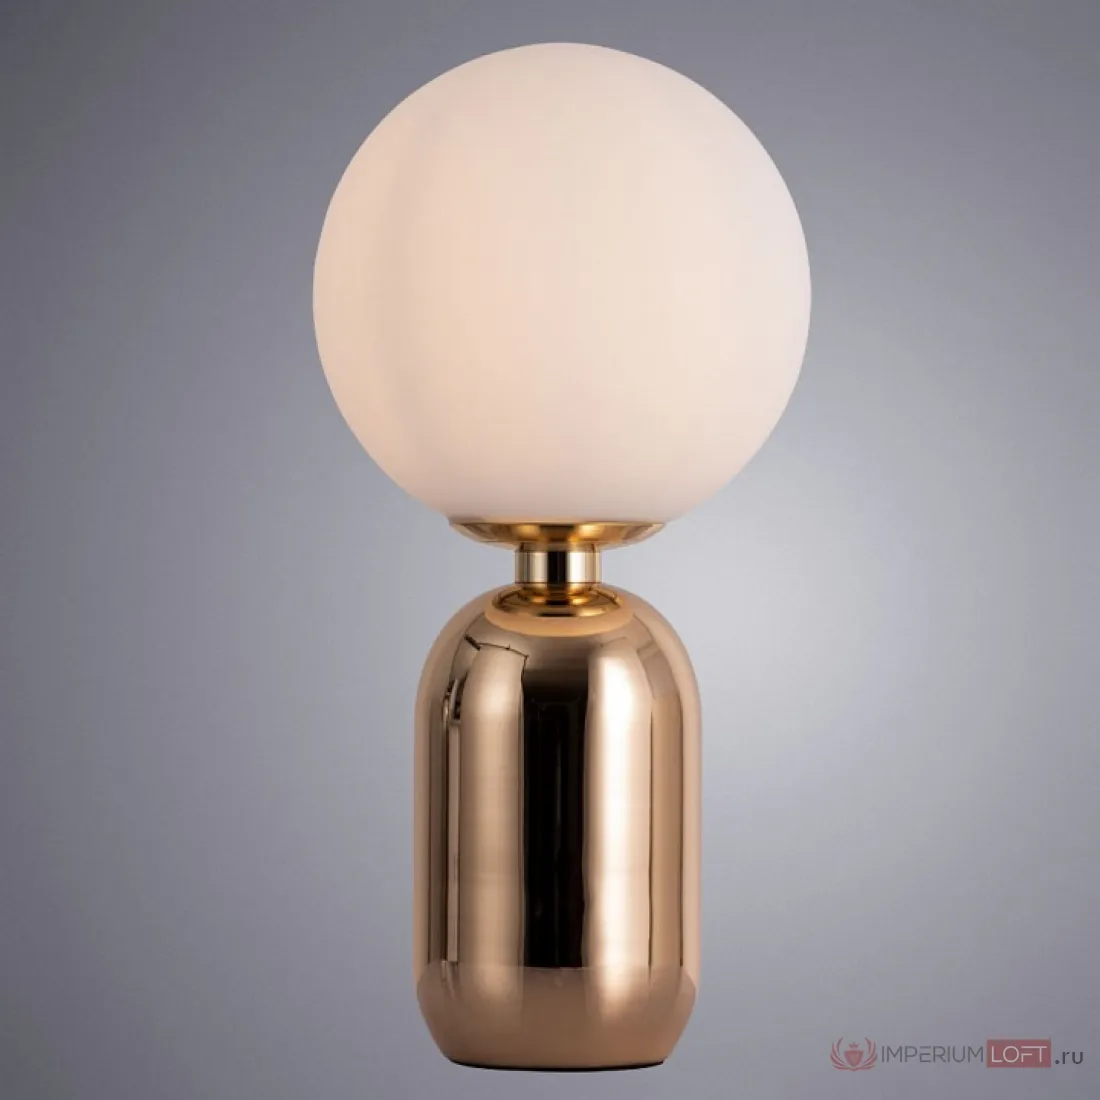 Настольная лампа шарами. Arte Lamp a3033lt-1go. A3033lt-1go. Arte Lamp bolla плафон. Настольная лампа a3033lt-1go.